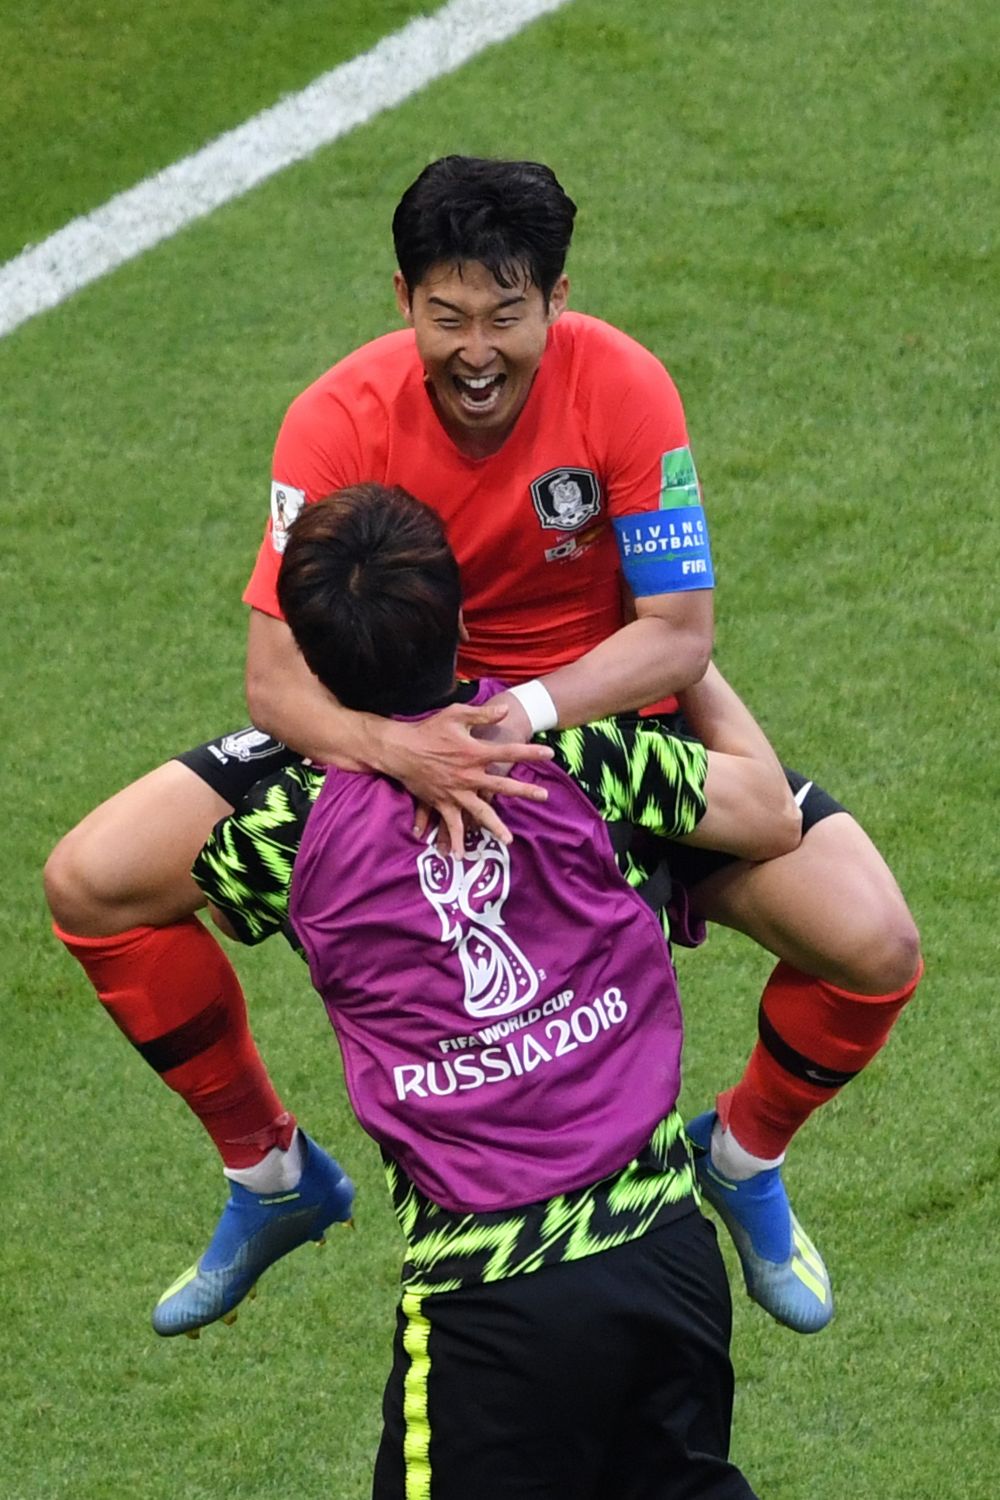 Нападающий сборной Южной Кореи Сон Хын Мин празднует свой гол сборной Германии, забравшись на руки к товарищу.